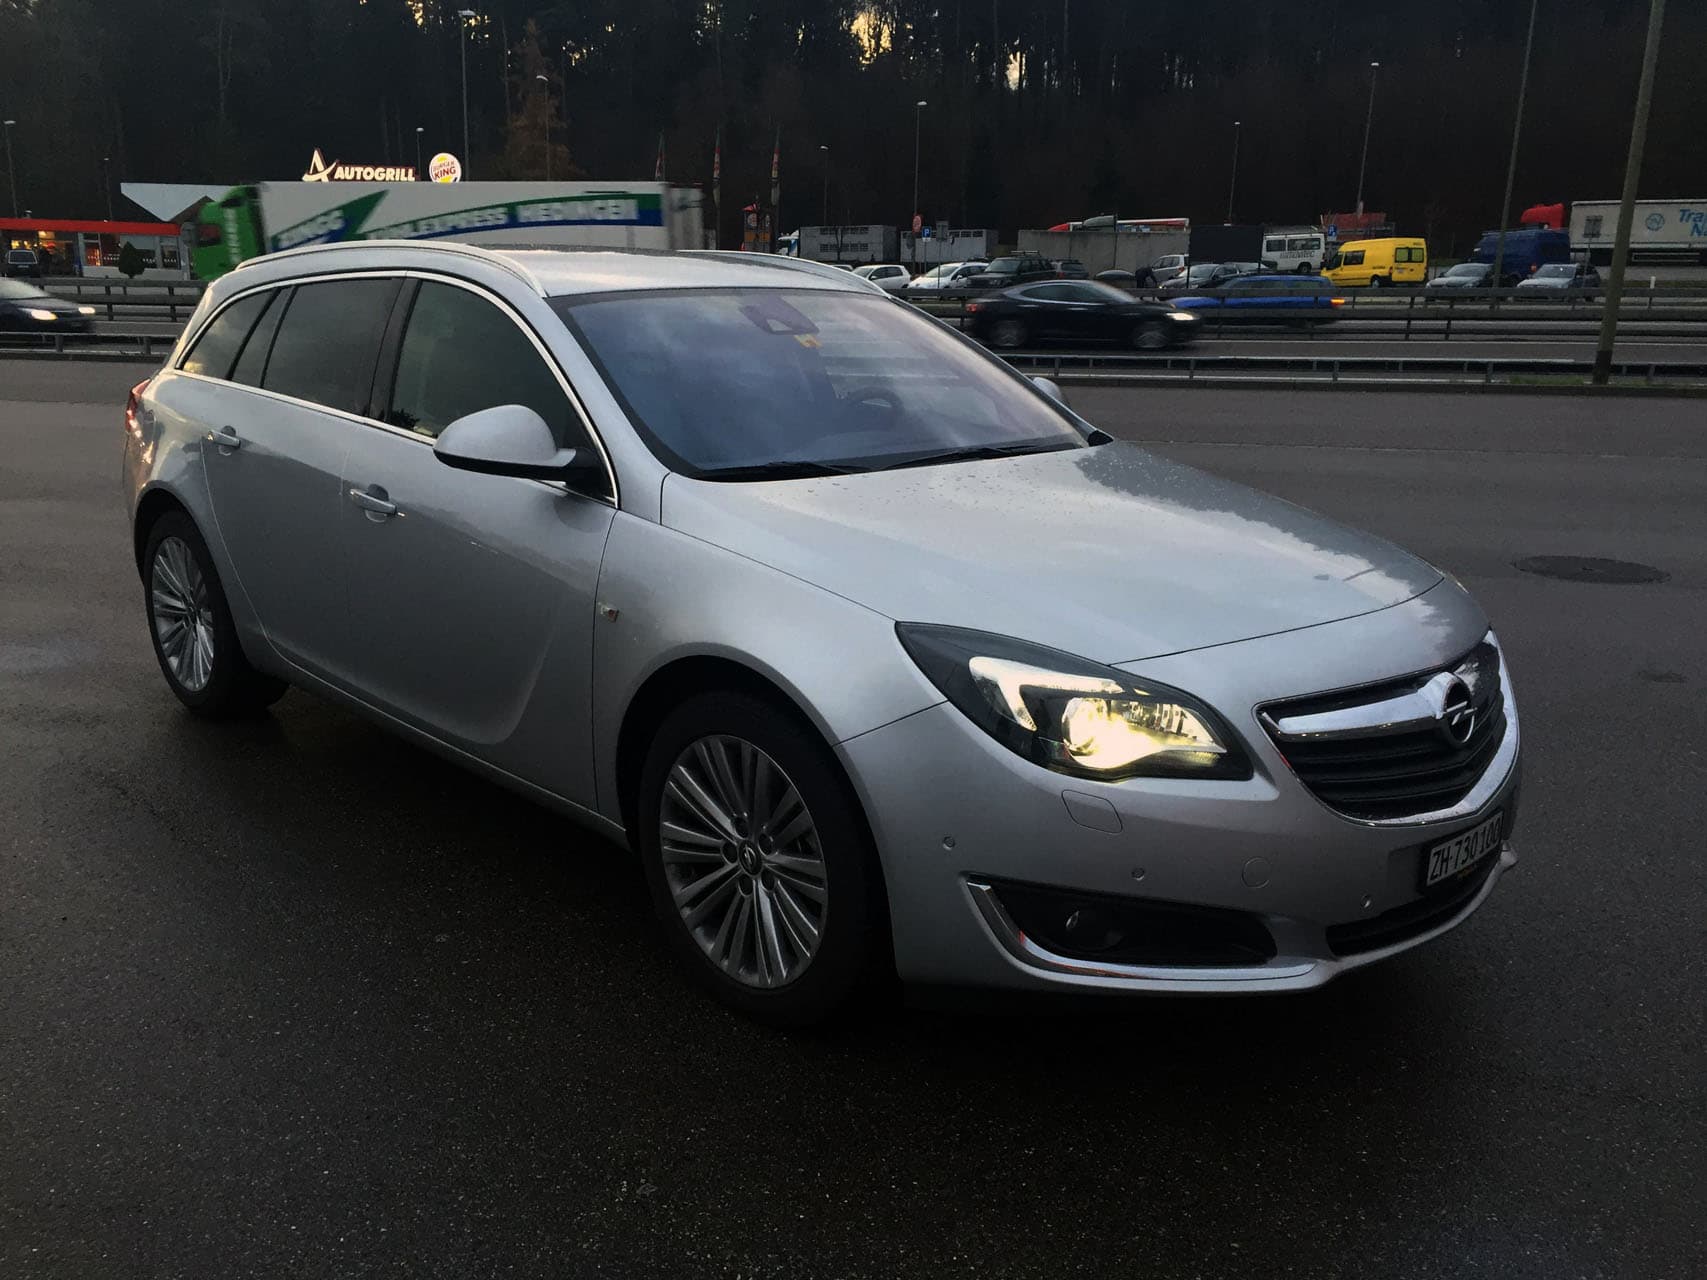 Opel Insignia 2.0 CDTI zuendung.ch 2015 (13)